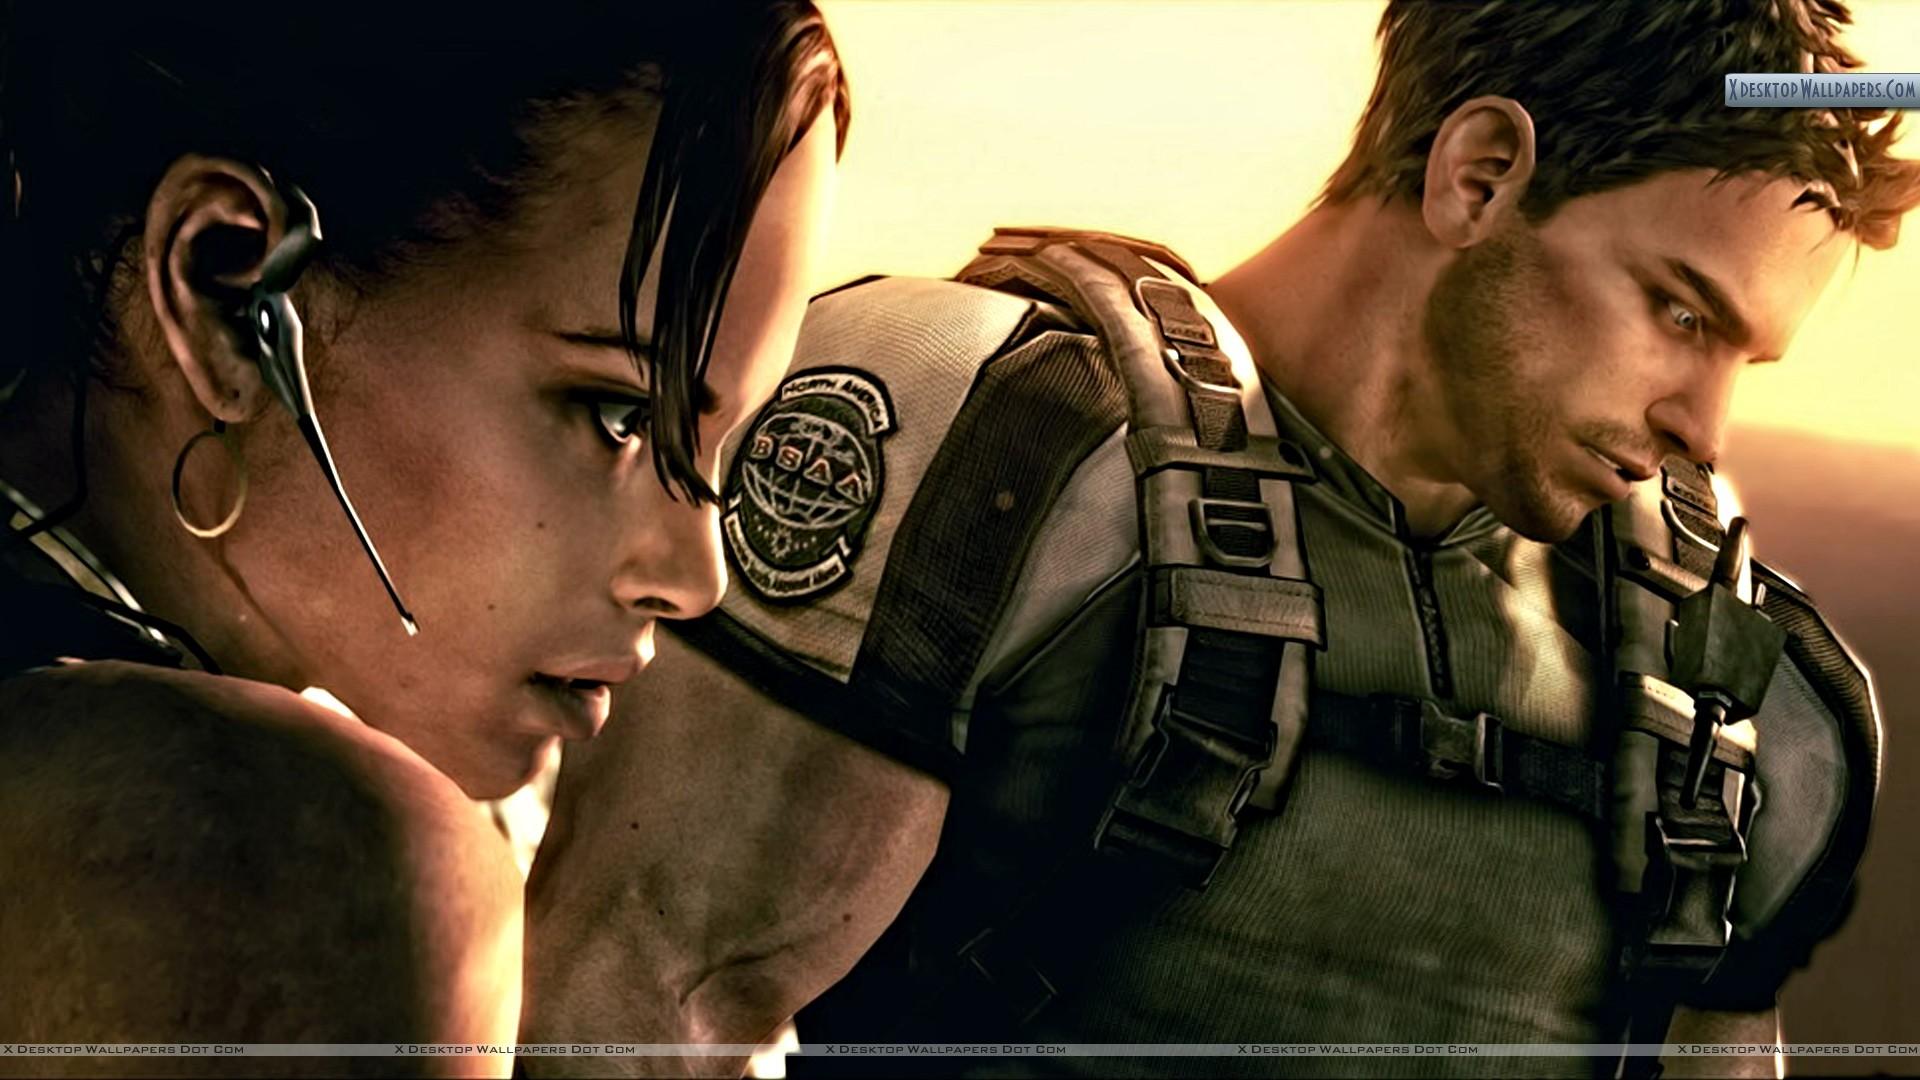 Chris and Sheva in Resident Evil 5 Wallpaper